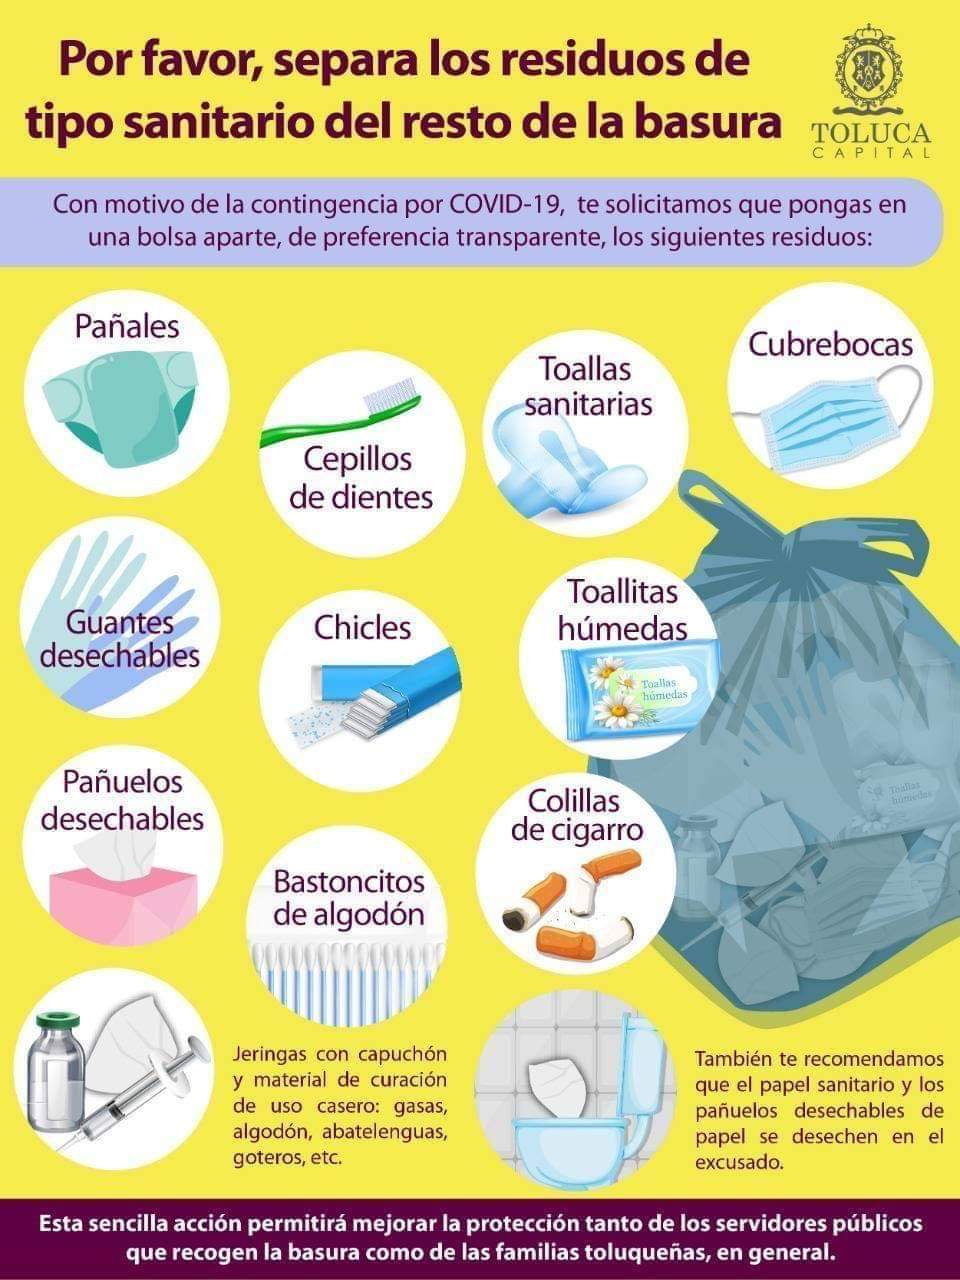 Exhorta Toluca a separar los residuos sanitarios desde los hogares